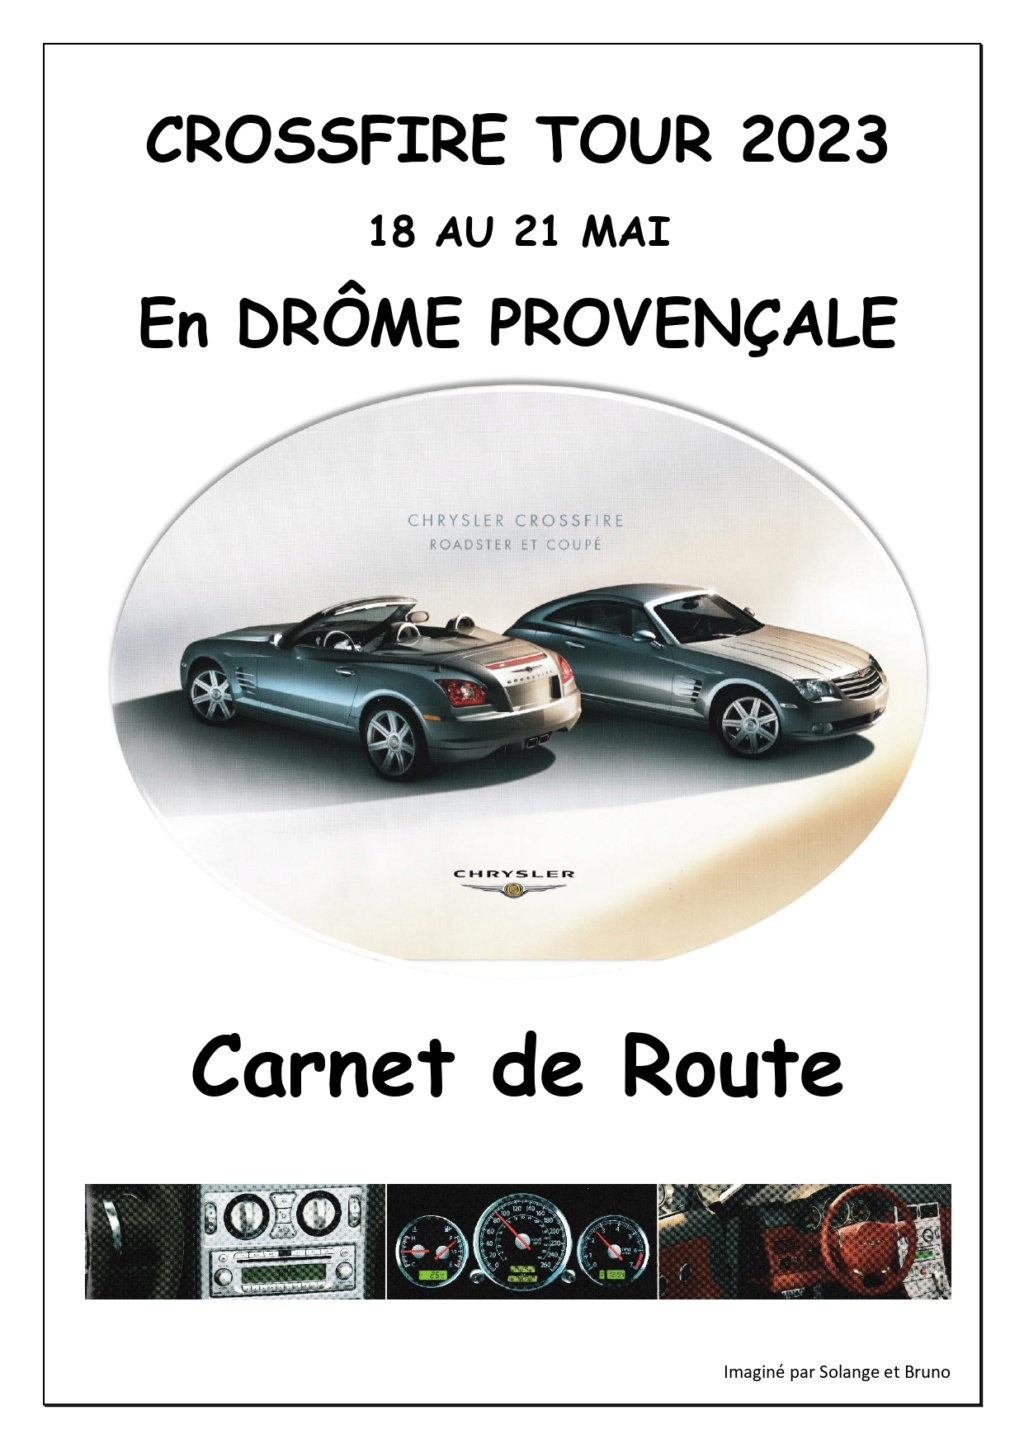 Crossfire Tour 2023 - Road trip, La Drôme provençale et l'Ardèche voisine. - Page 6 Carnet10